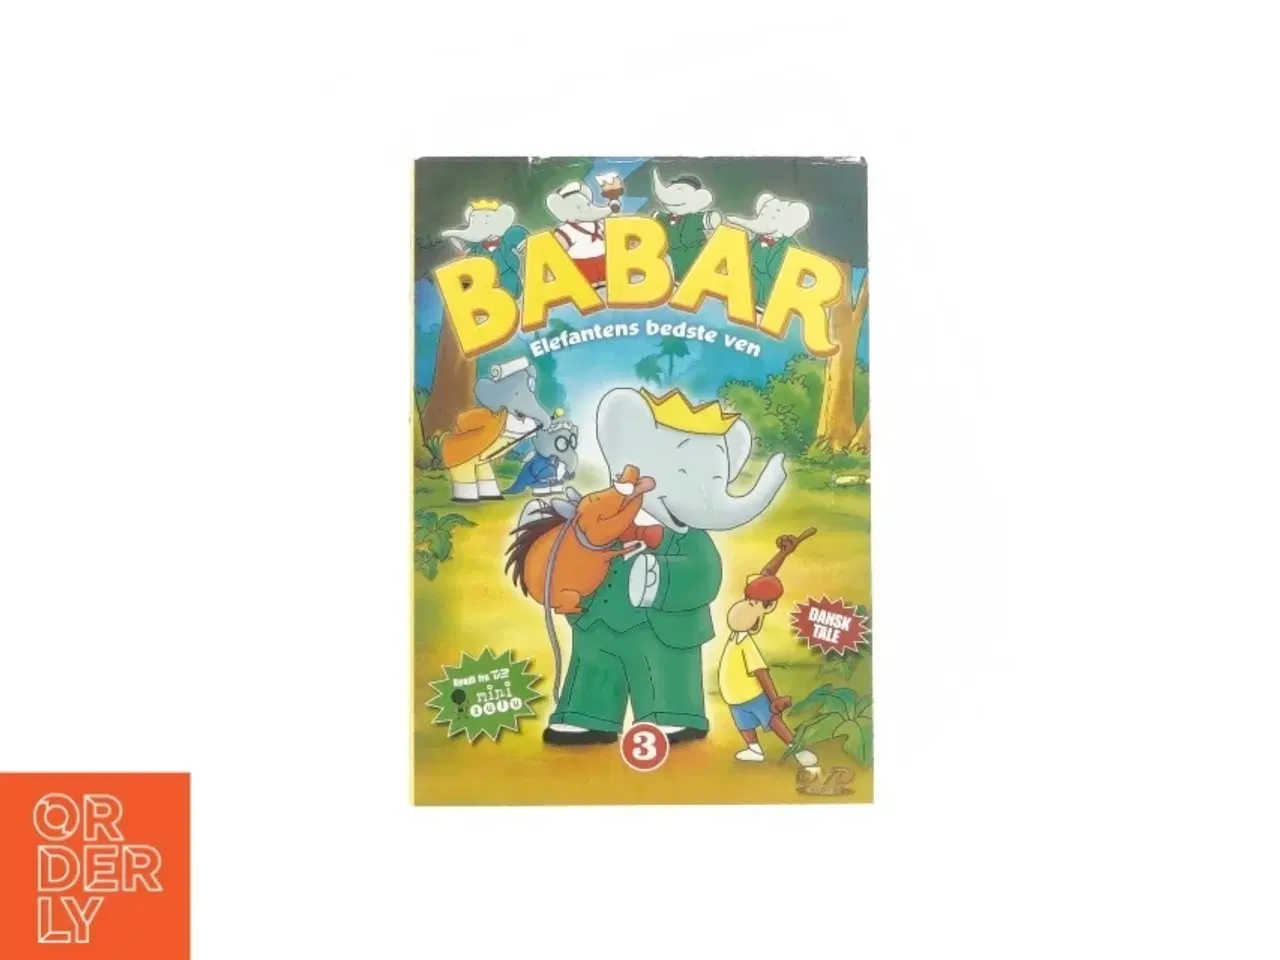 Billede 1 - Barbar - elefantens bedste ven (DVD)